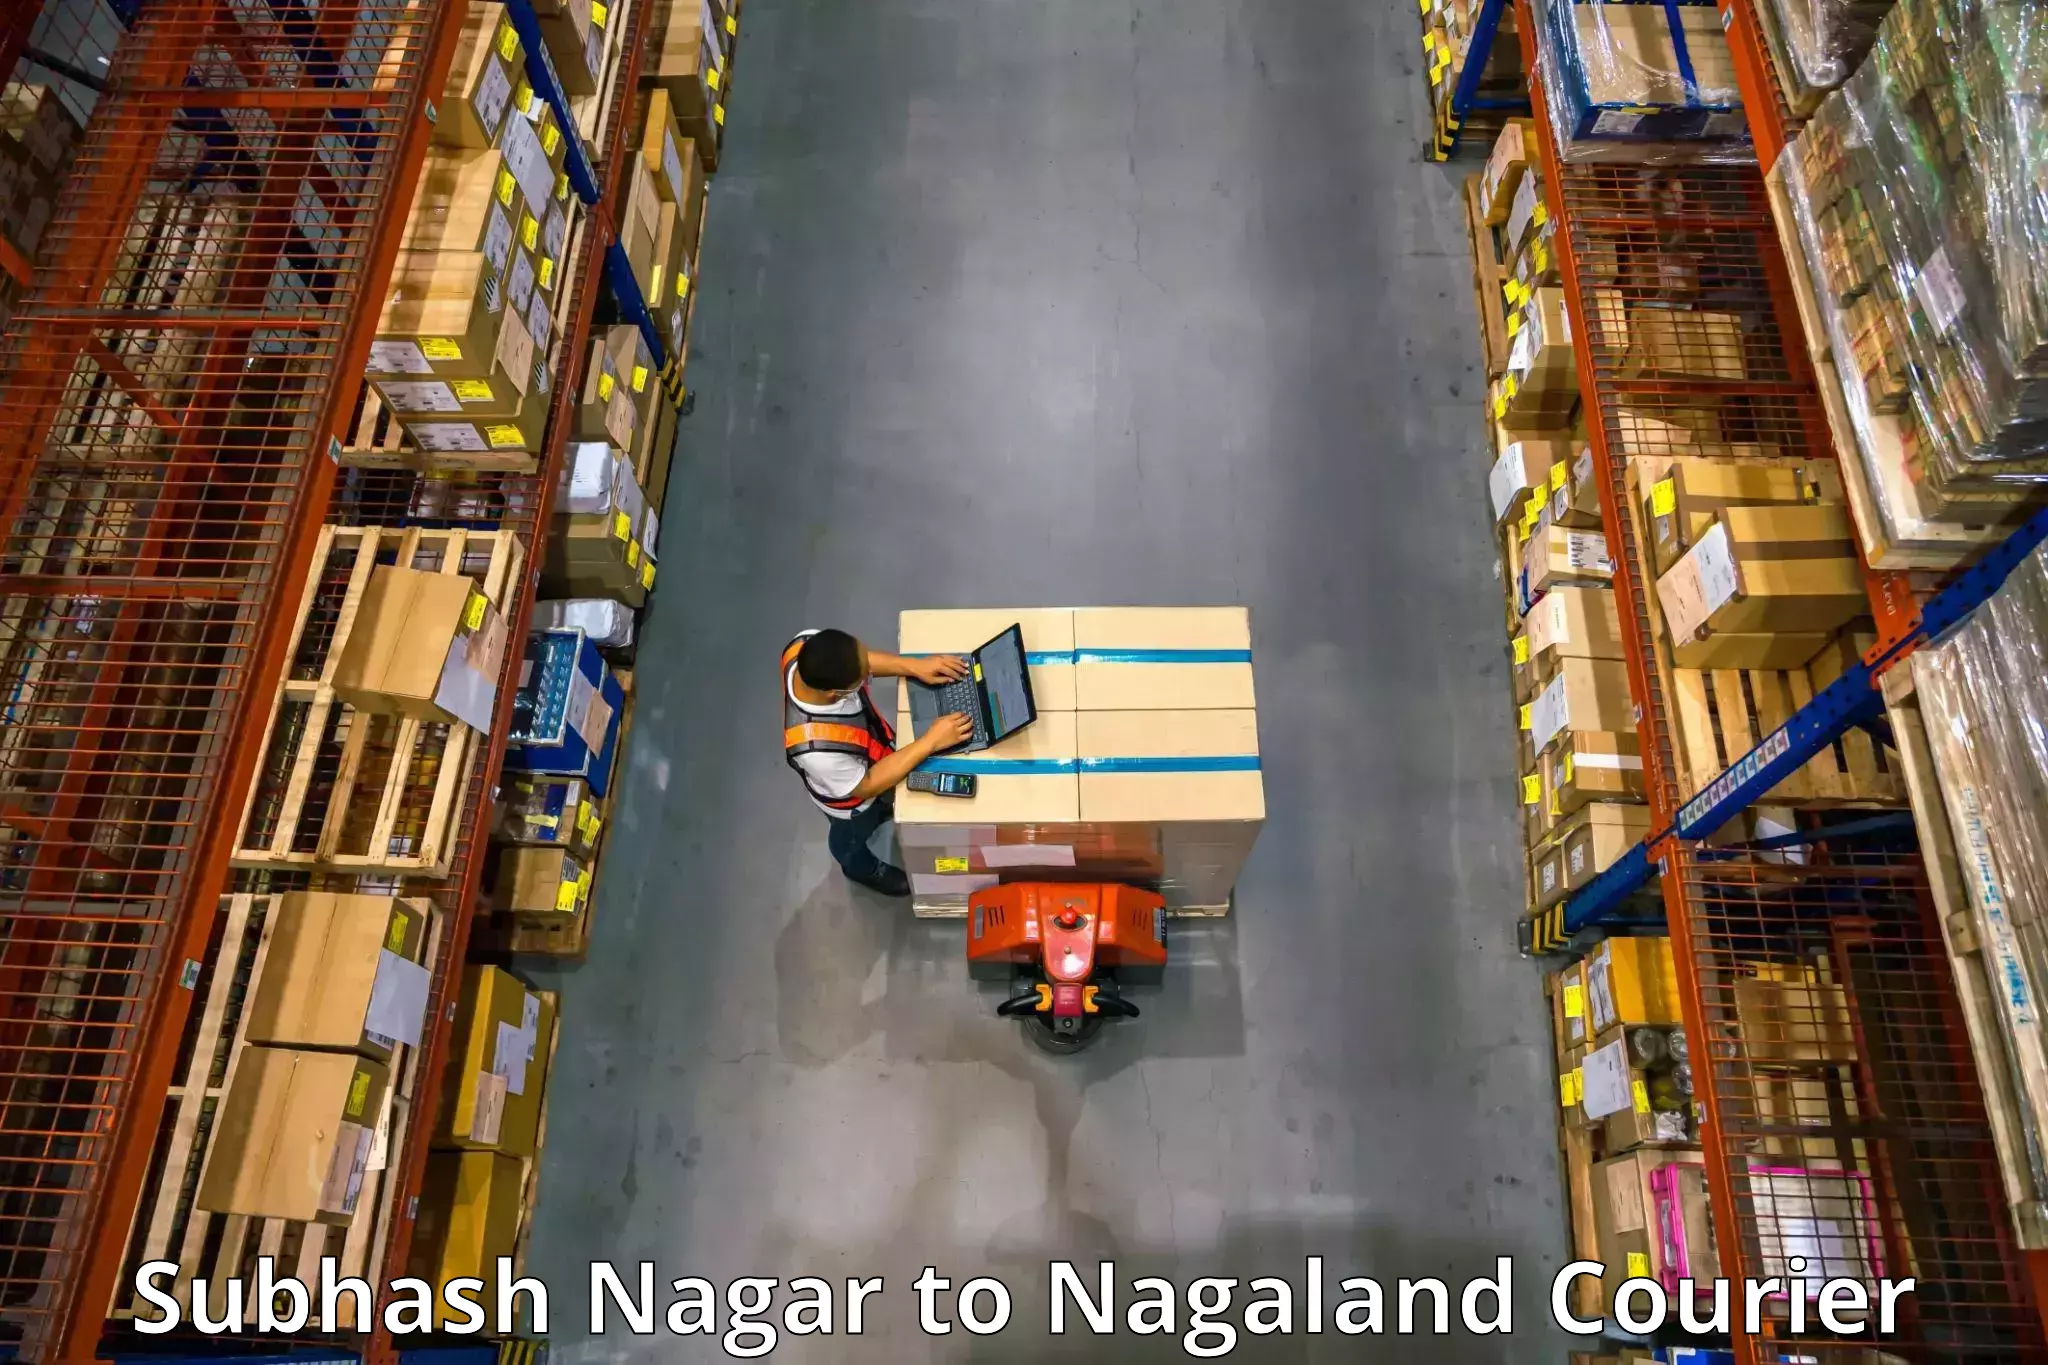 Trusted moving company Subhash Nagar to Nagaland